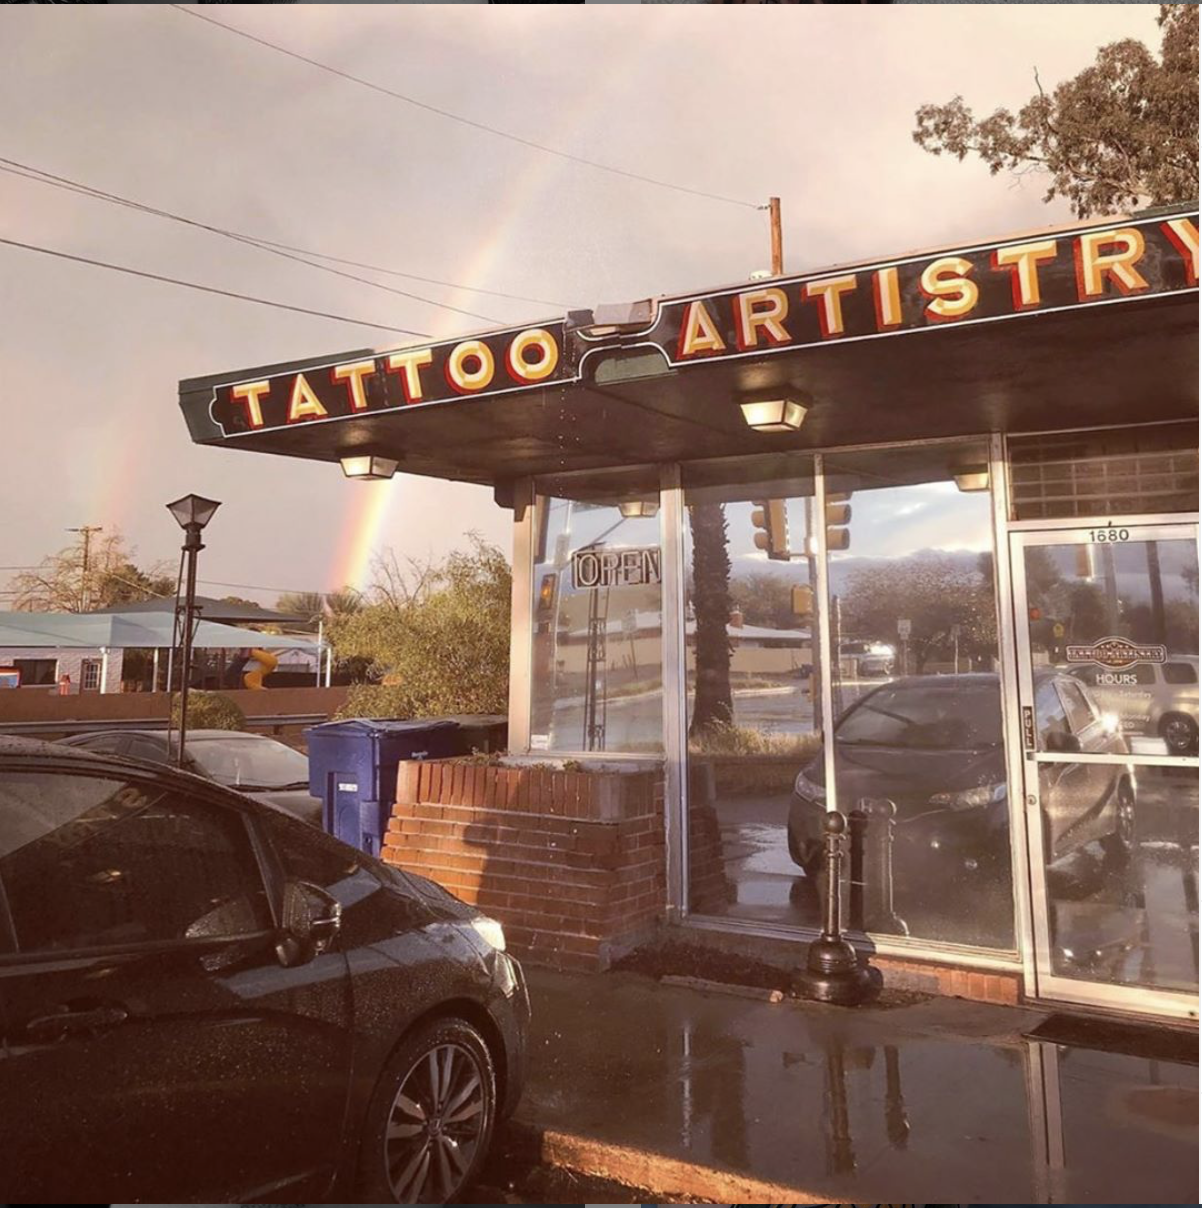 Tattoo Artistry